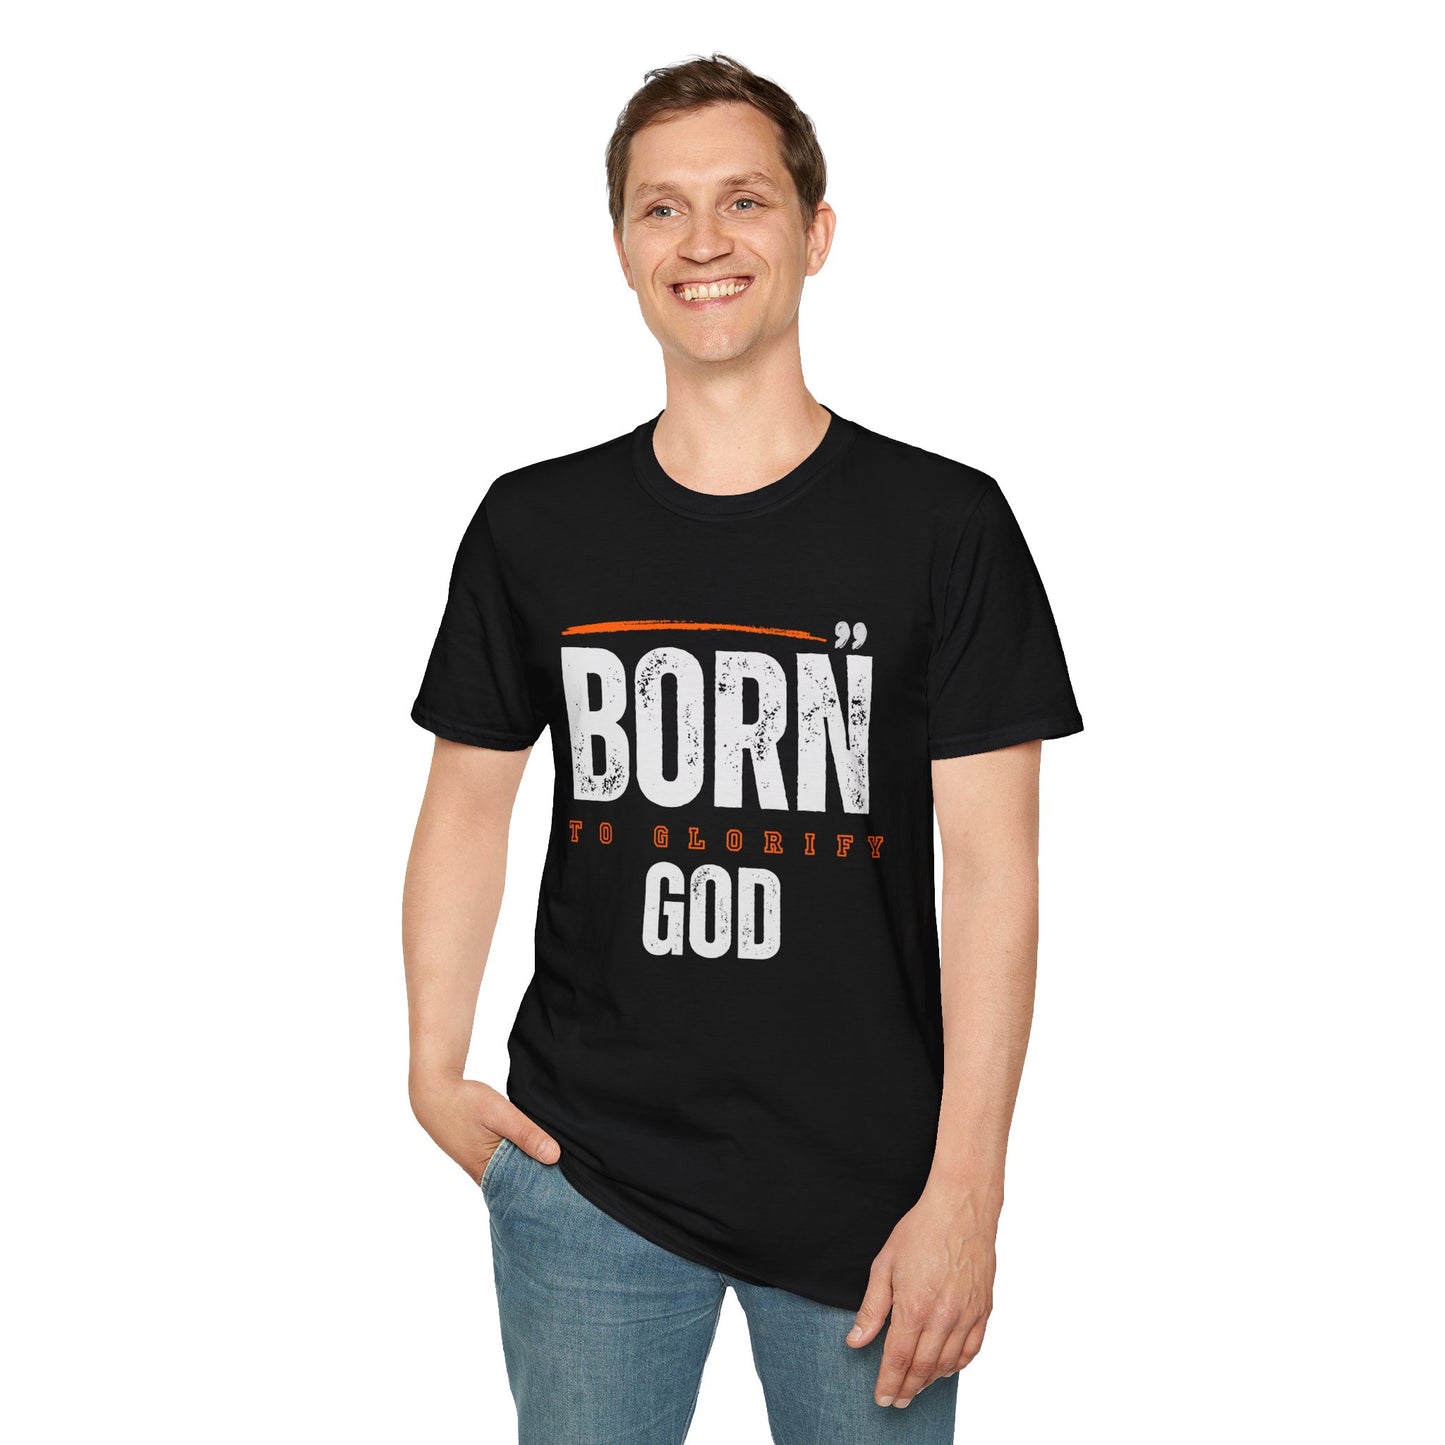 Born to Glorify God Unisex Soft Style T-Shirt